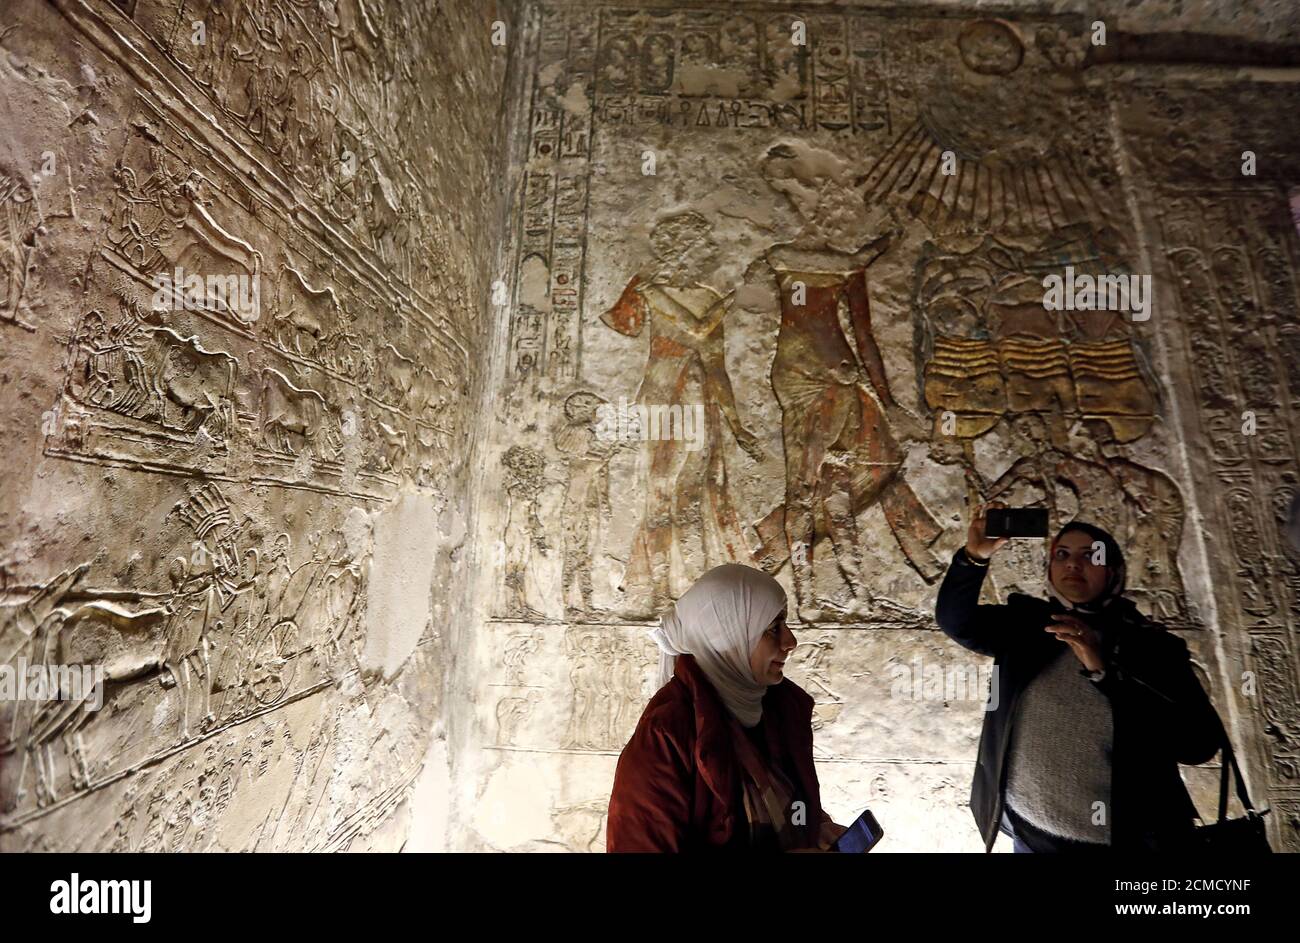 Miembros de los medios de comunicación son vistos dentro de la tumba de 'Mery-Ra' en el sitio del templo de Tall el-Amarna durante un recorrido por sitios arqueológicos incluyendo cementerios y ciudades antiguas en la gobernación de Minya, al sur de el Cairo, Egipto 1 de febrero de 2019. Foto tomada el 1 de febrero de 2019. REUTERS/Amr Abdallah Dalsh Foto de stock